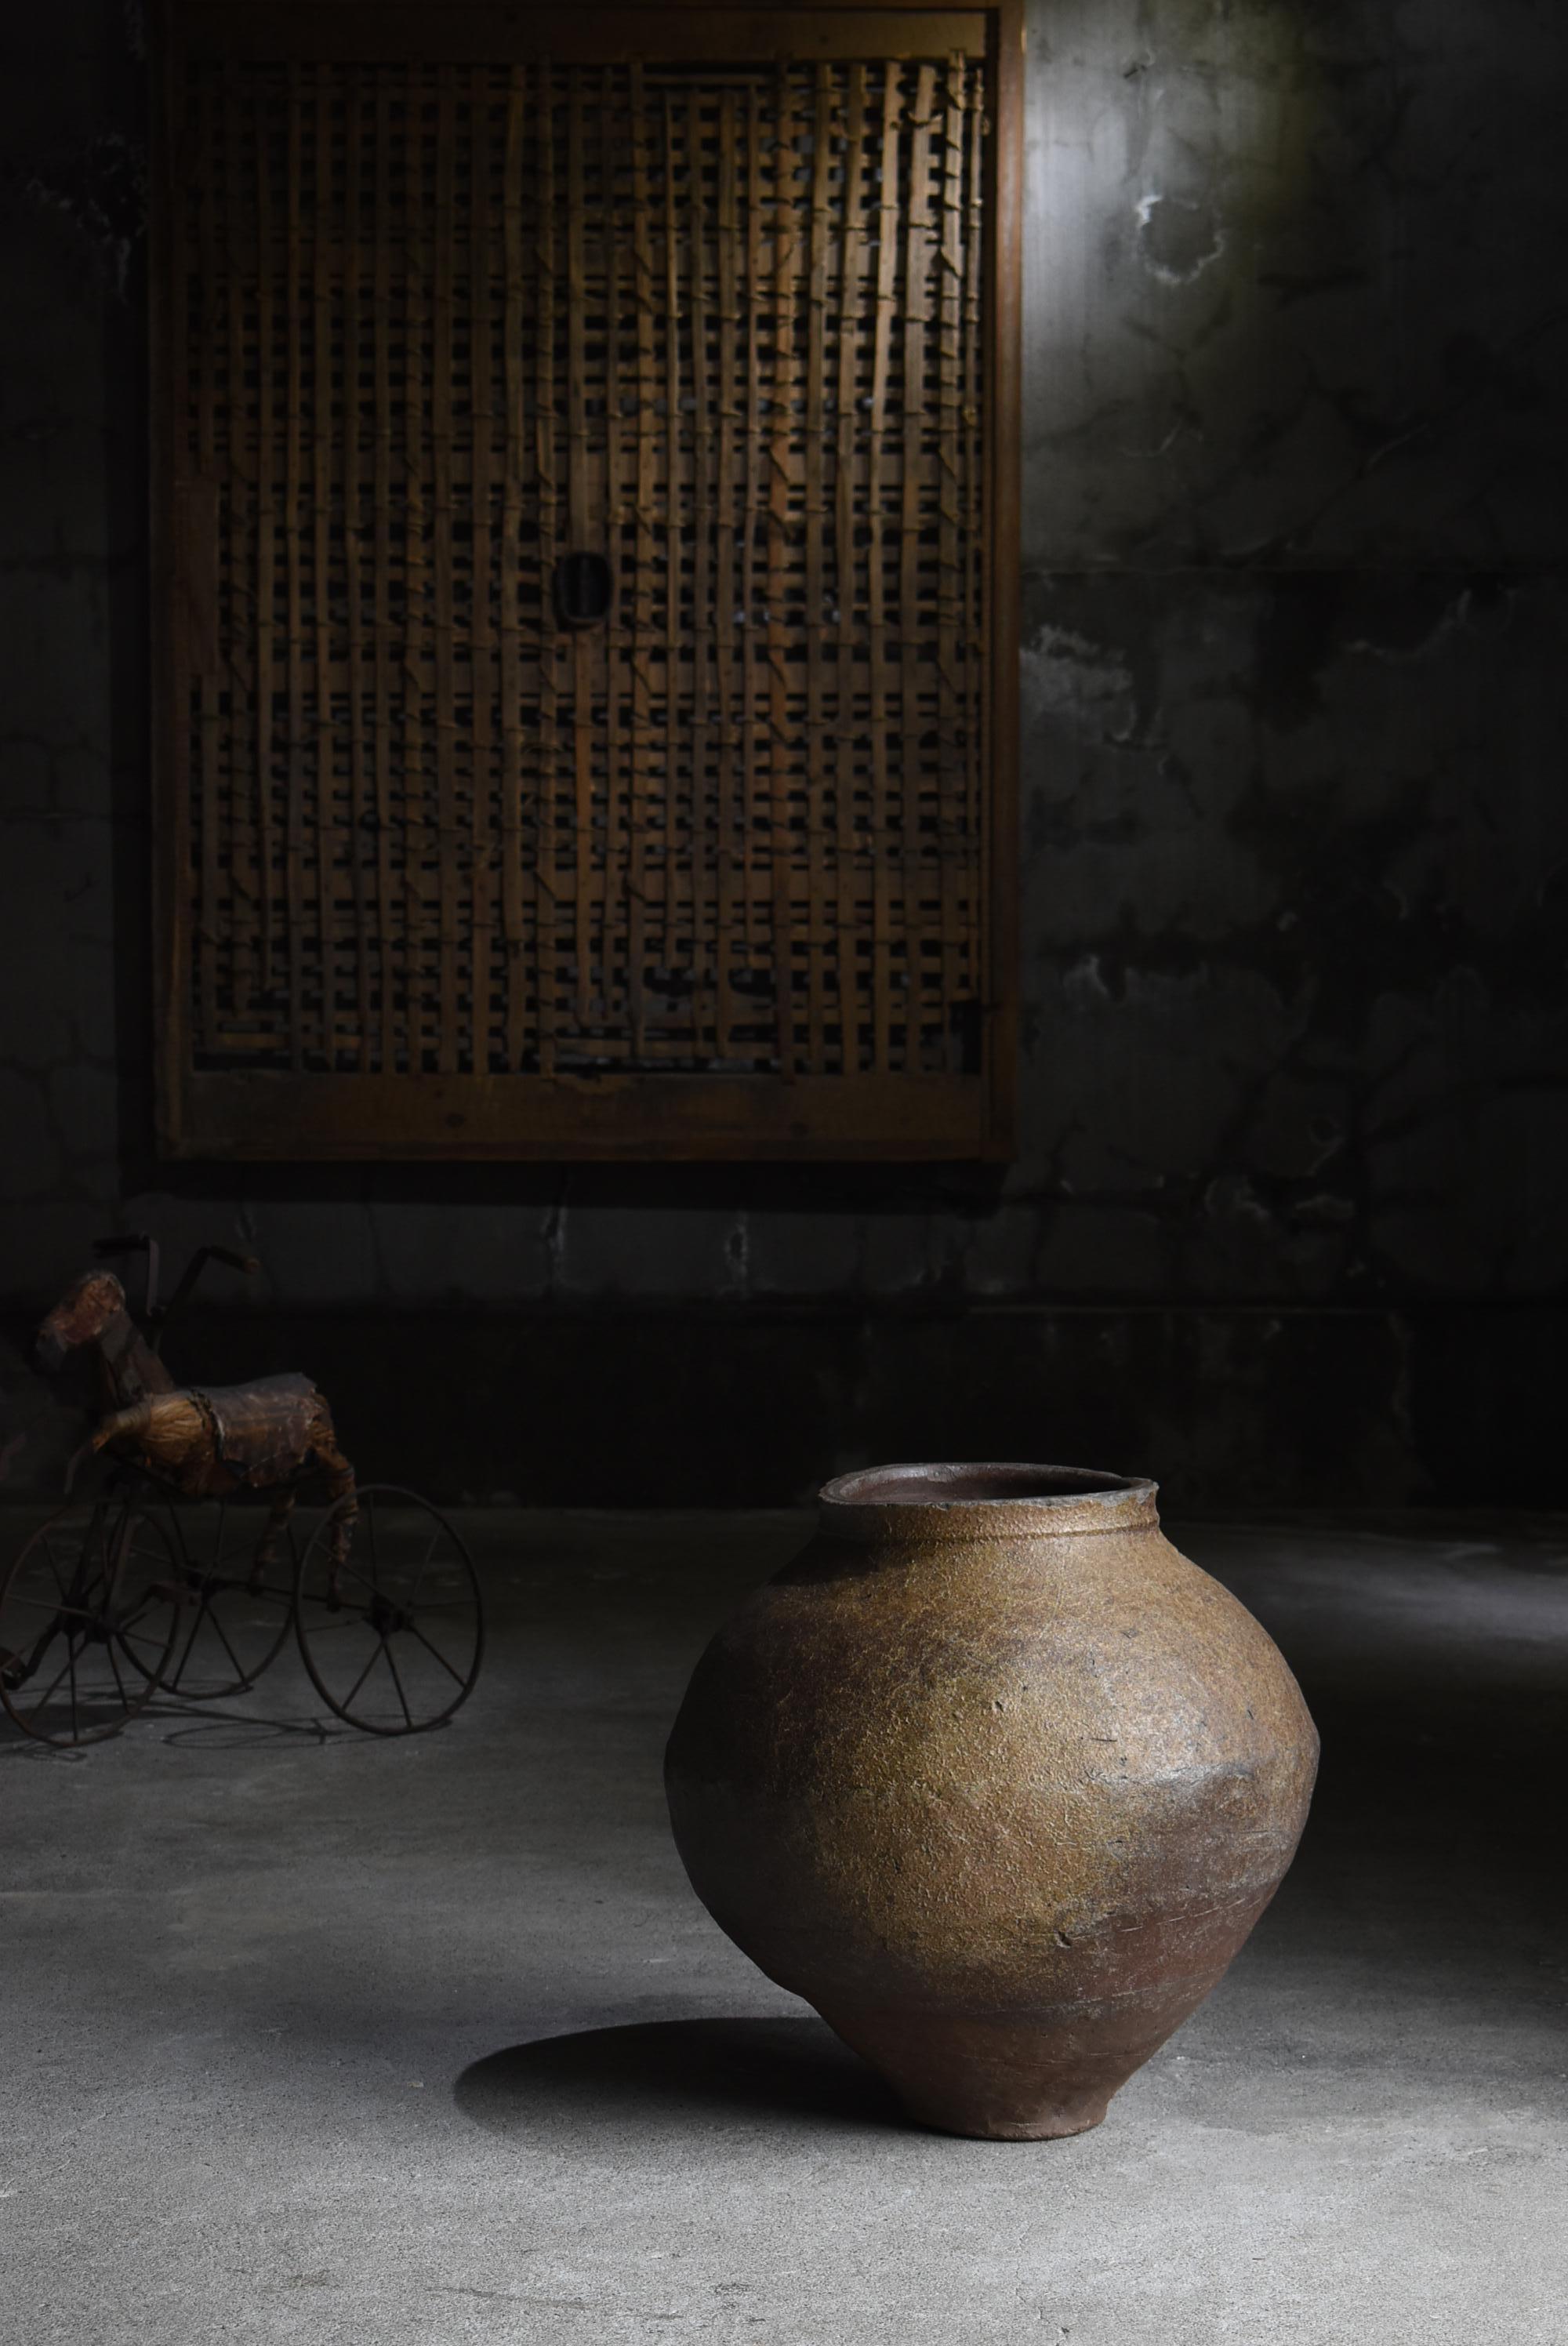 Il s'agit d'une poterie japonaise très ancienne et de grande taille.
Il s'agit du Tokoname-yaki.
Cette poterie a été fabriquée entre le 14e et le 16e siècle.

La forme déformée est très unique.
Il est très beau sous tous les angles.

Il est stable